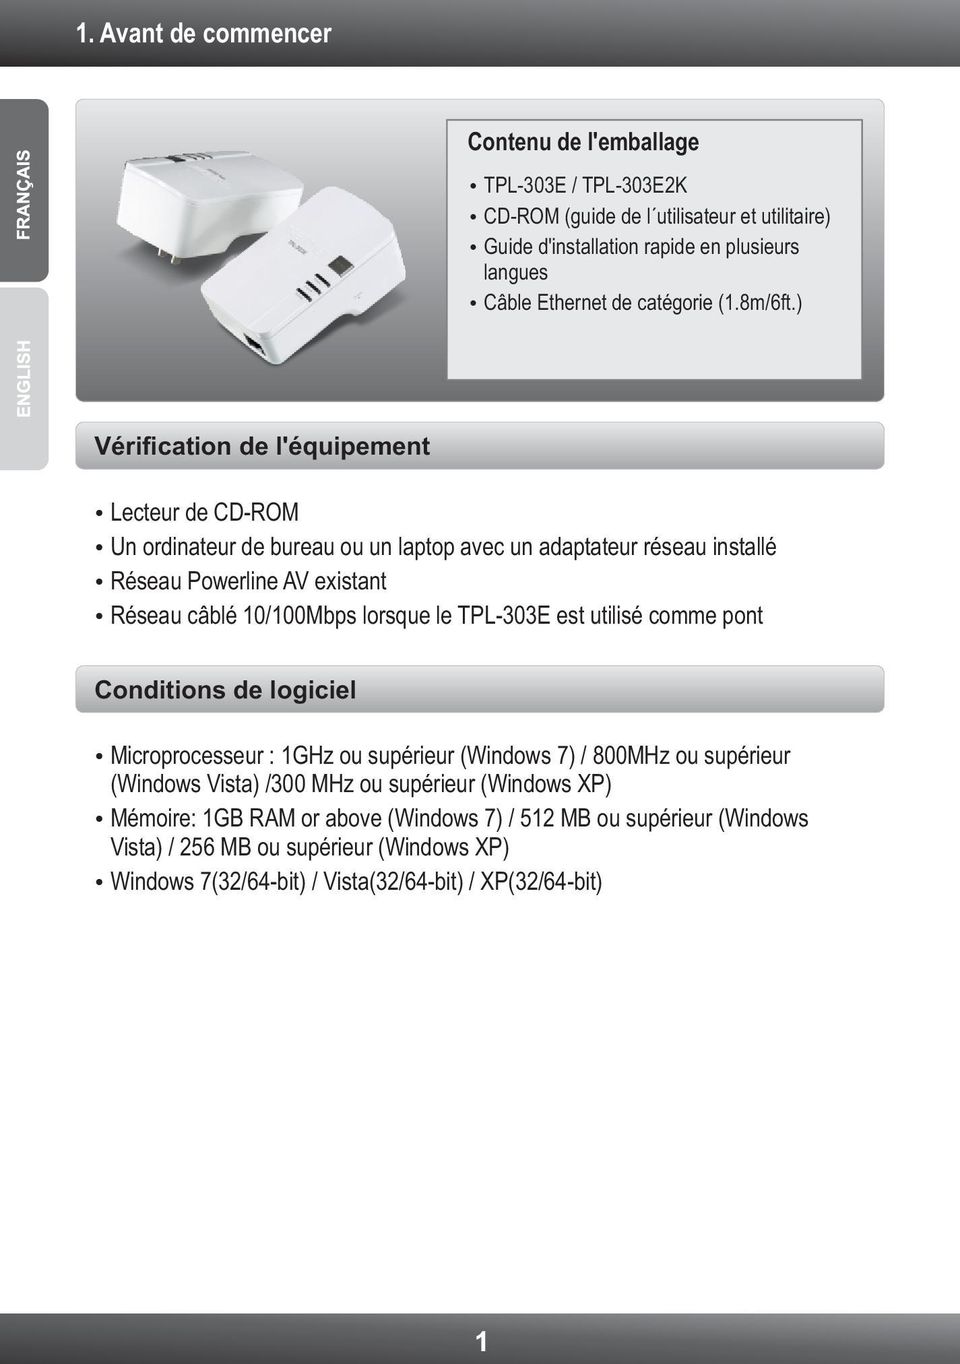 ) Vérification de l'équipement Lecteur de CD-ROM Un ordinateur de bureau ou un laptop avec un adaptateur réseau installé Réseau Powerline AV existant Réseau câblé 10/100Mbps lorsque